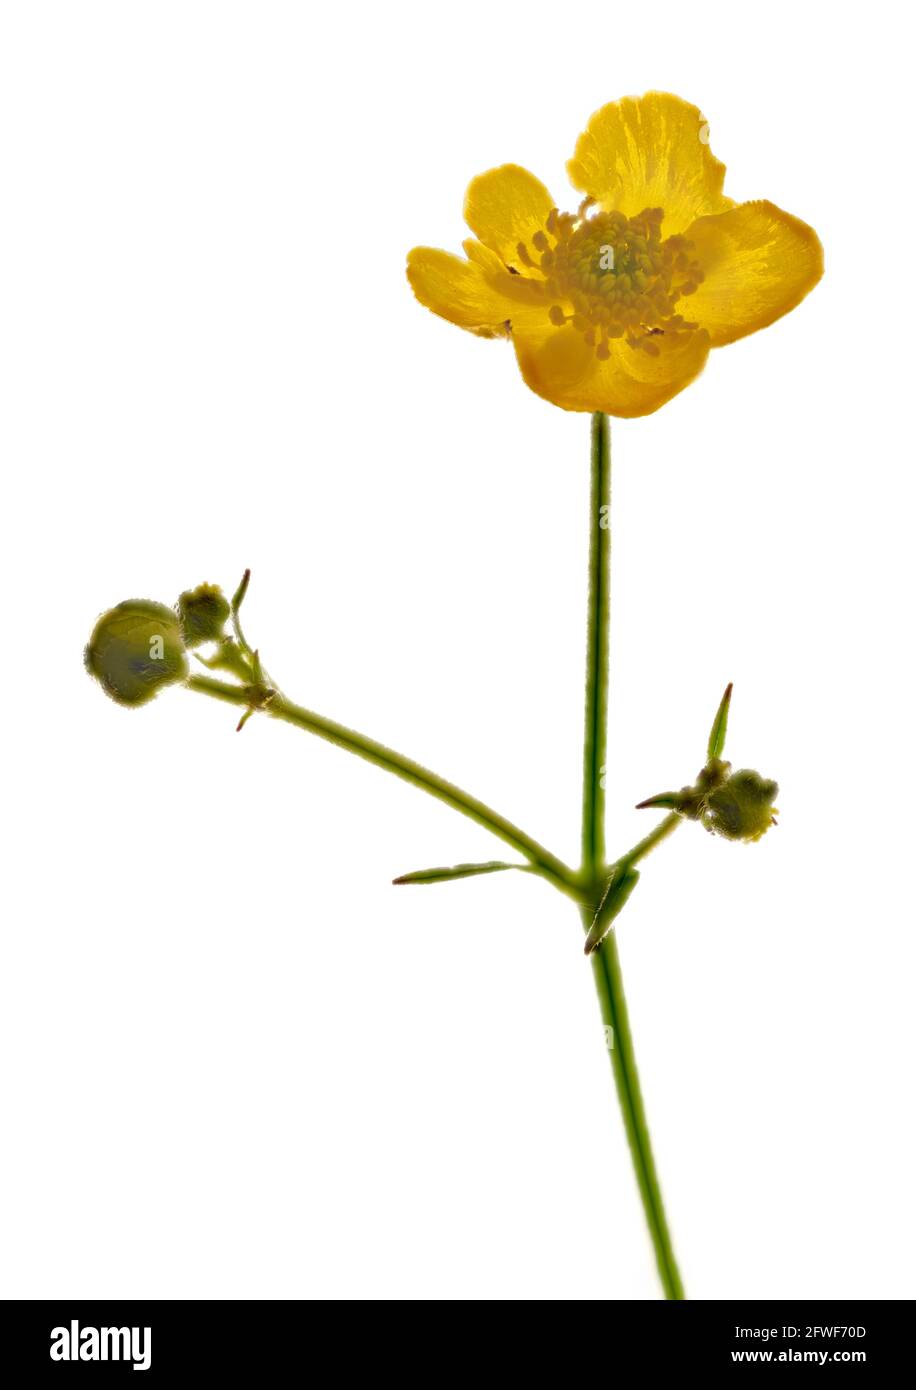 Buttercup comune (Ranunculus acris) fotografato in studio su uno sfondo bianco chiaro Foto Stock